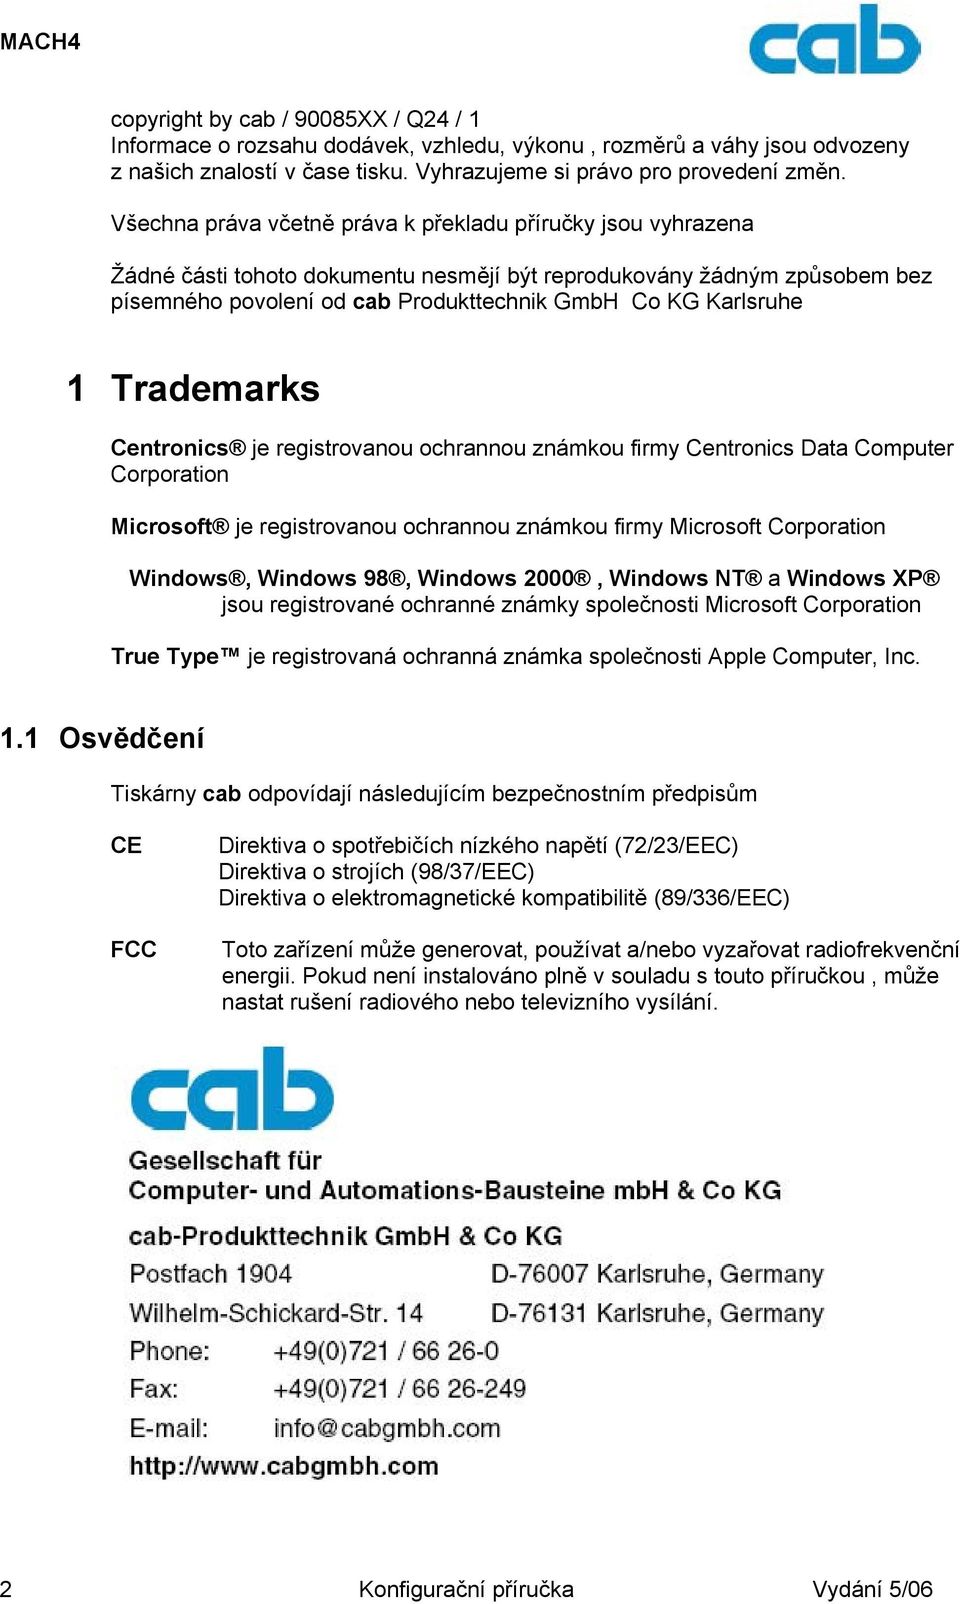 1 Trademarks Centronics je registrovanou ochrannou známkou firmy Centronics Data Computer Corporation Microsoft je registrovanou ochrannou známkou firmy Microsoft Corporation Windows, Windows 98,